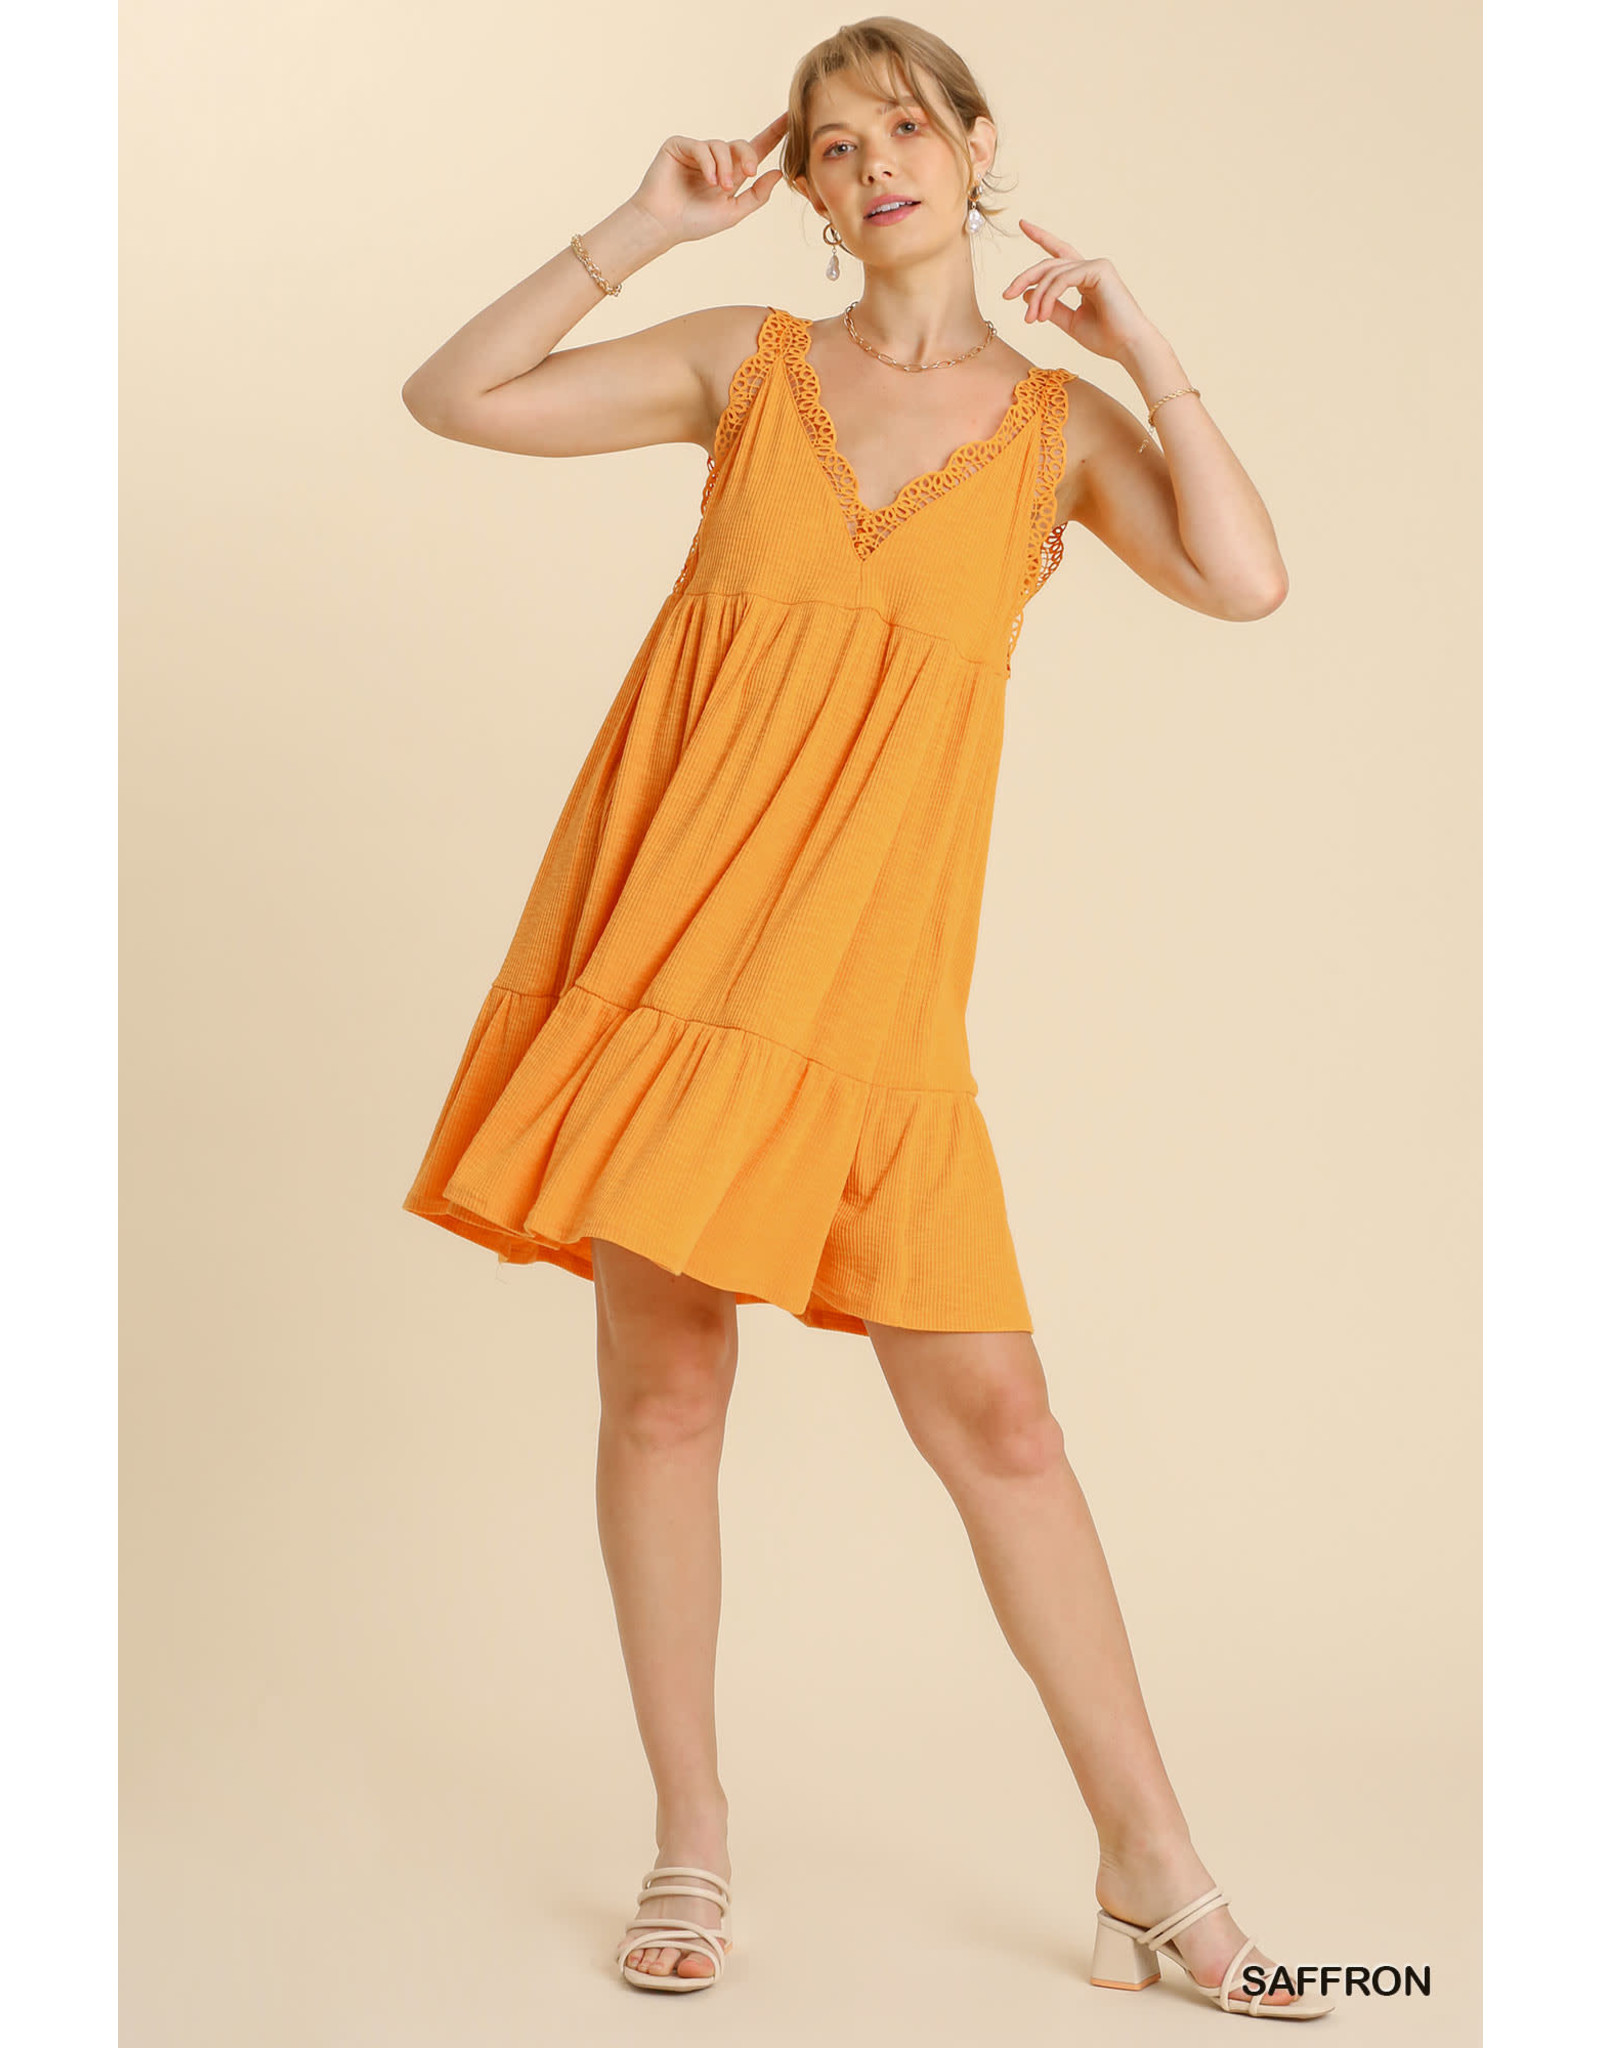 Umgee USA Saffron Crochet Sleeveless Dress